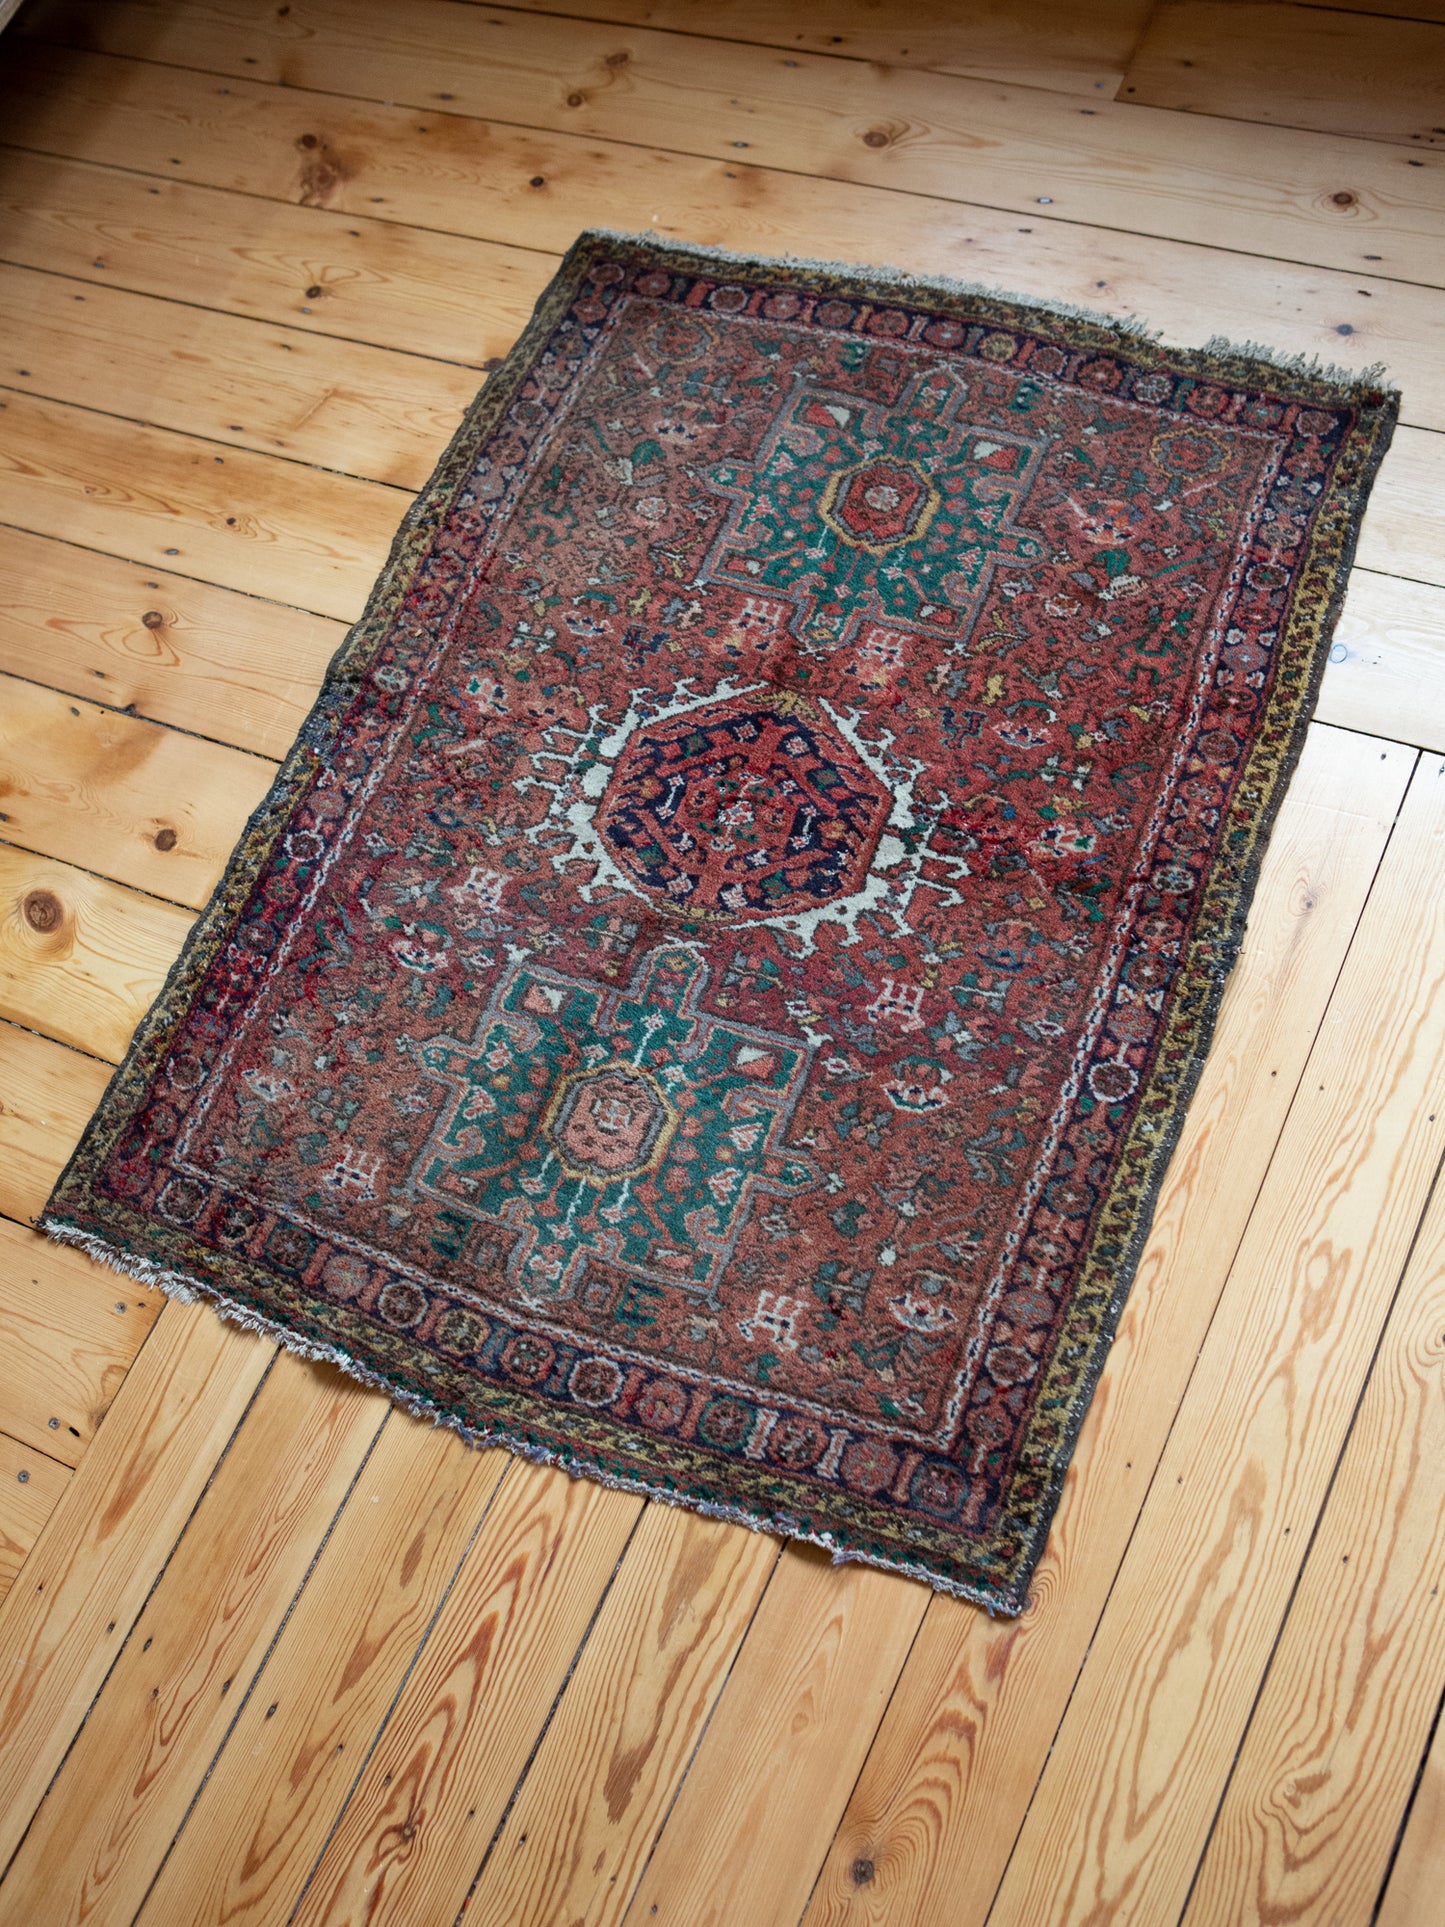 Beau tapis persan vintage | Patine et couleurs merveilleuses | 120 x 90 cm (#4)